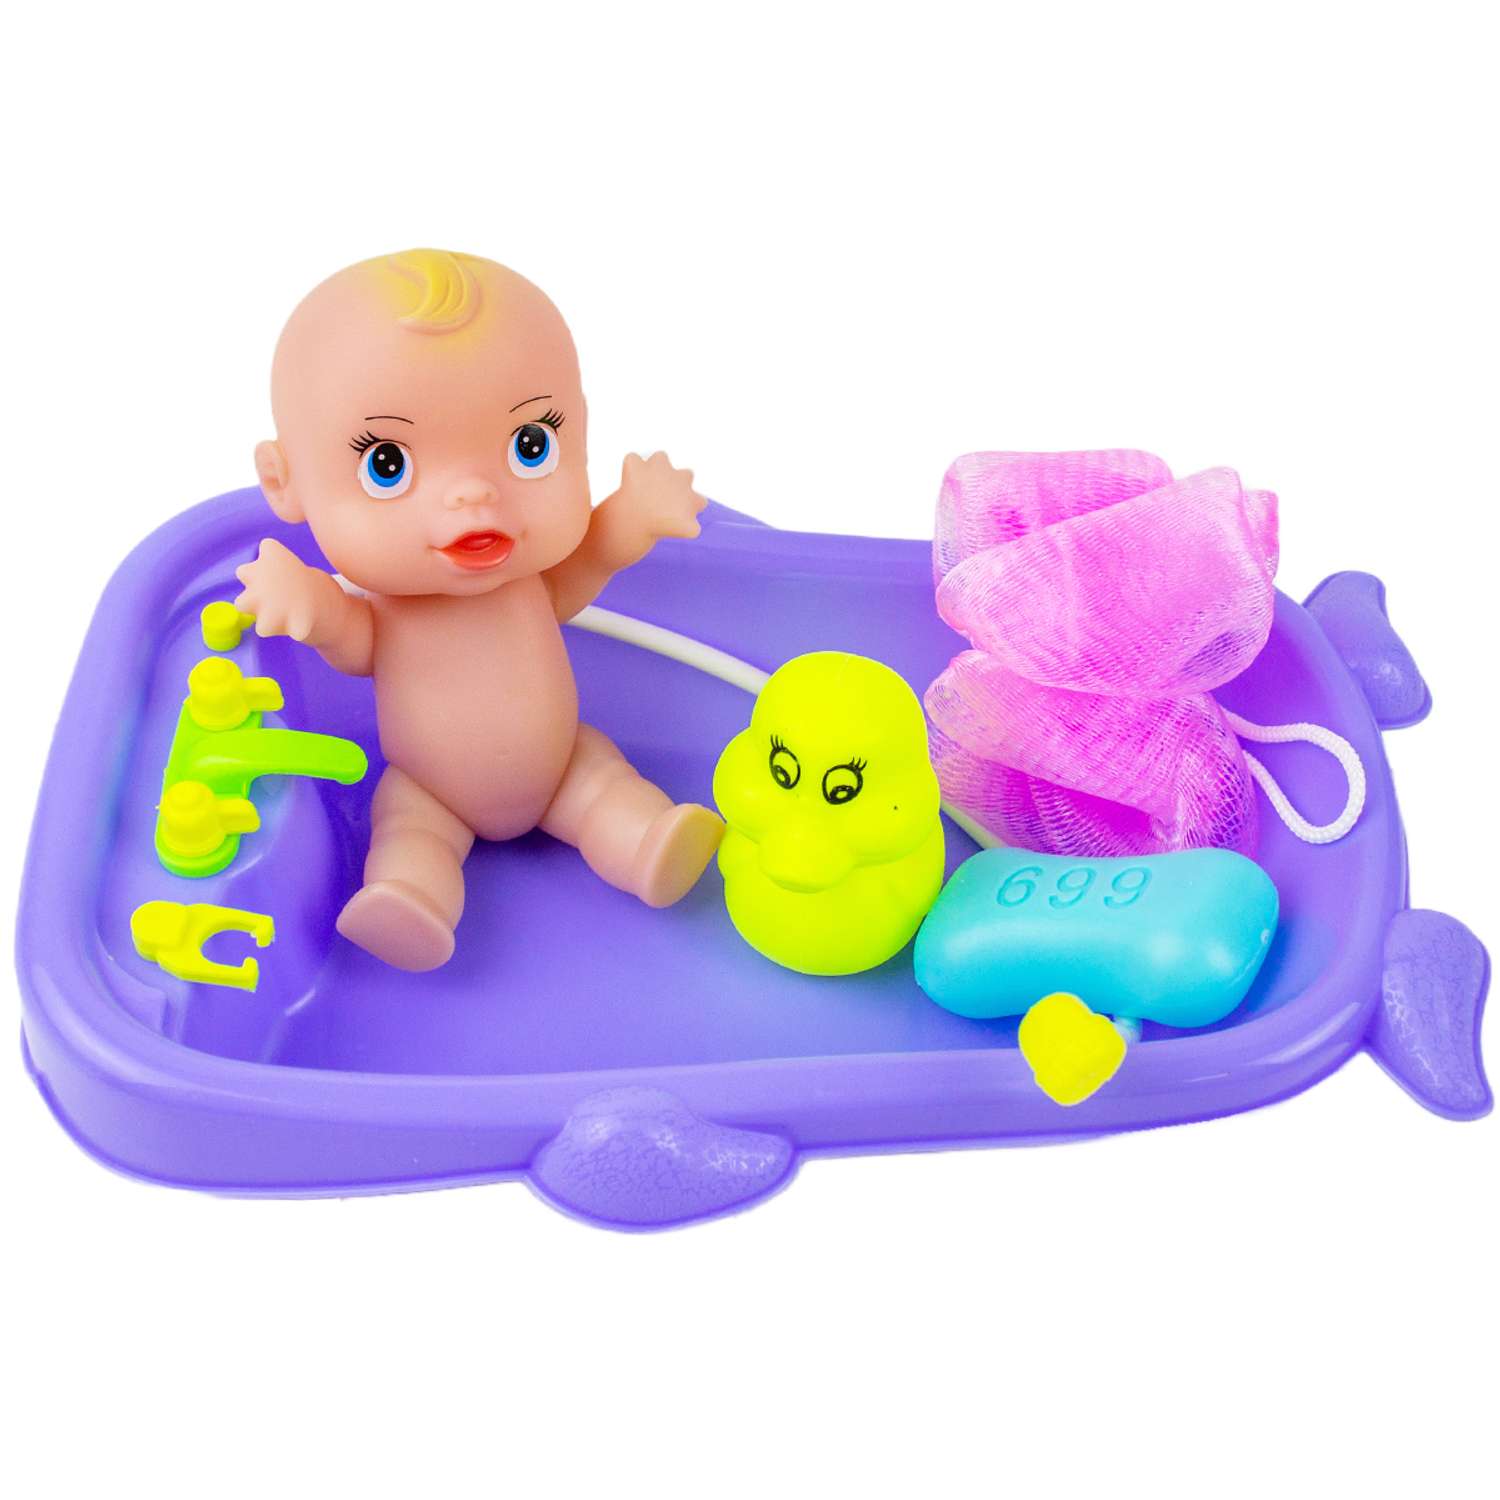 Игрушка для ванной Story Game Baby bath - фото 2